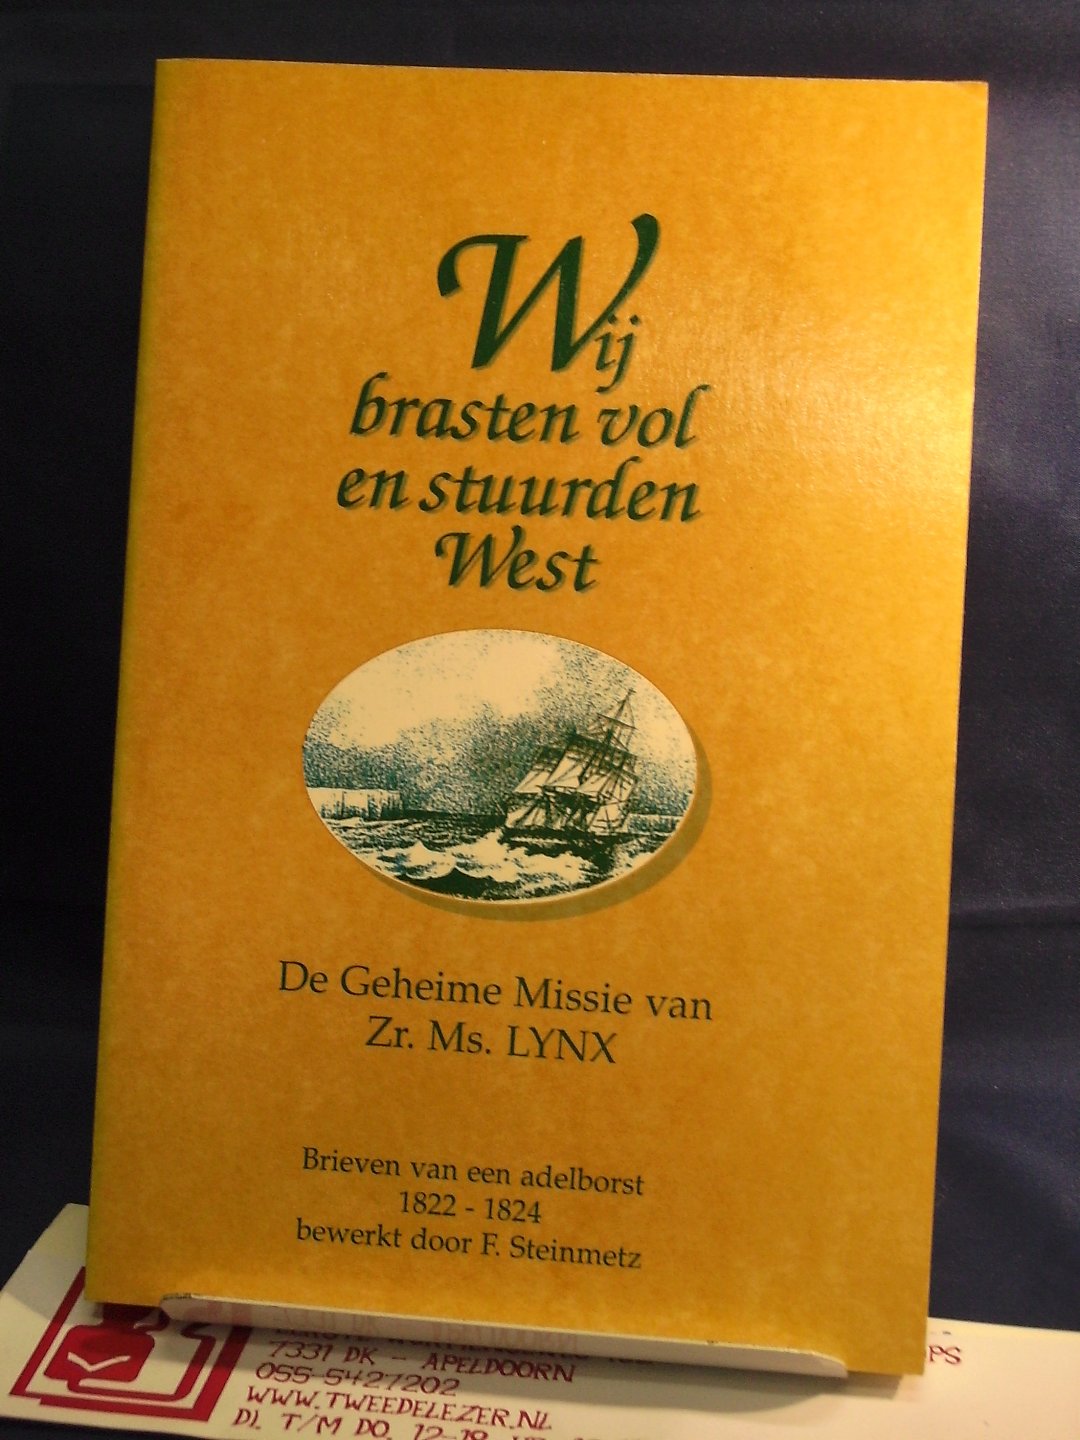 Steinmetz, F. - Wij brasten vol en stuurden West ; De geheime missie van Zr. MS. LYNX ; brieven van een adelborst 1822-1824